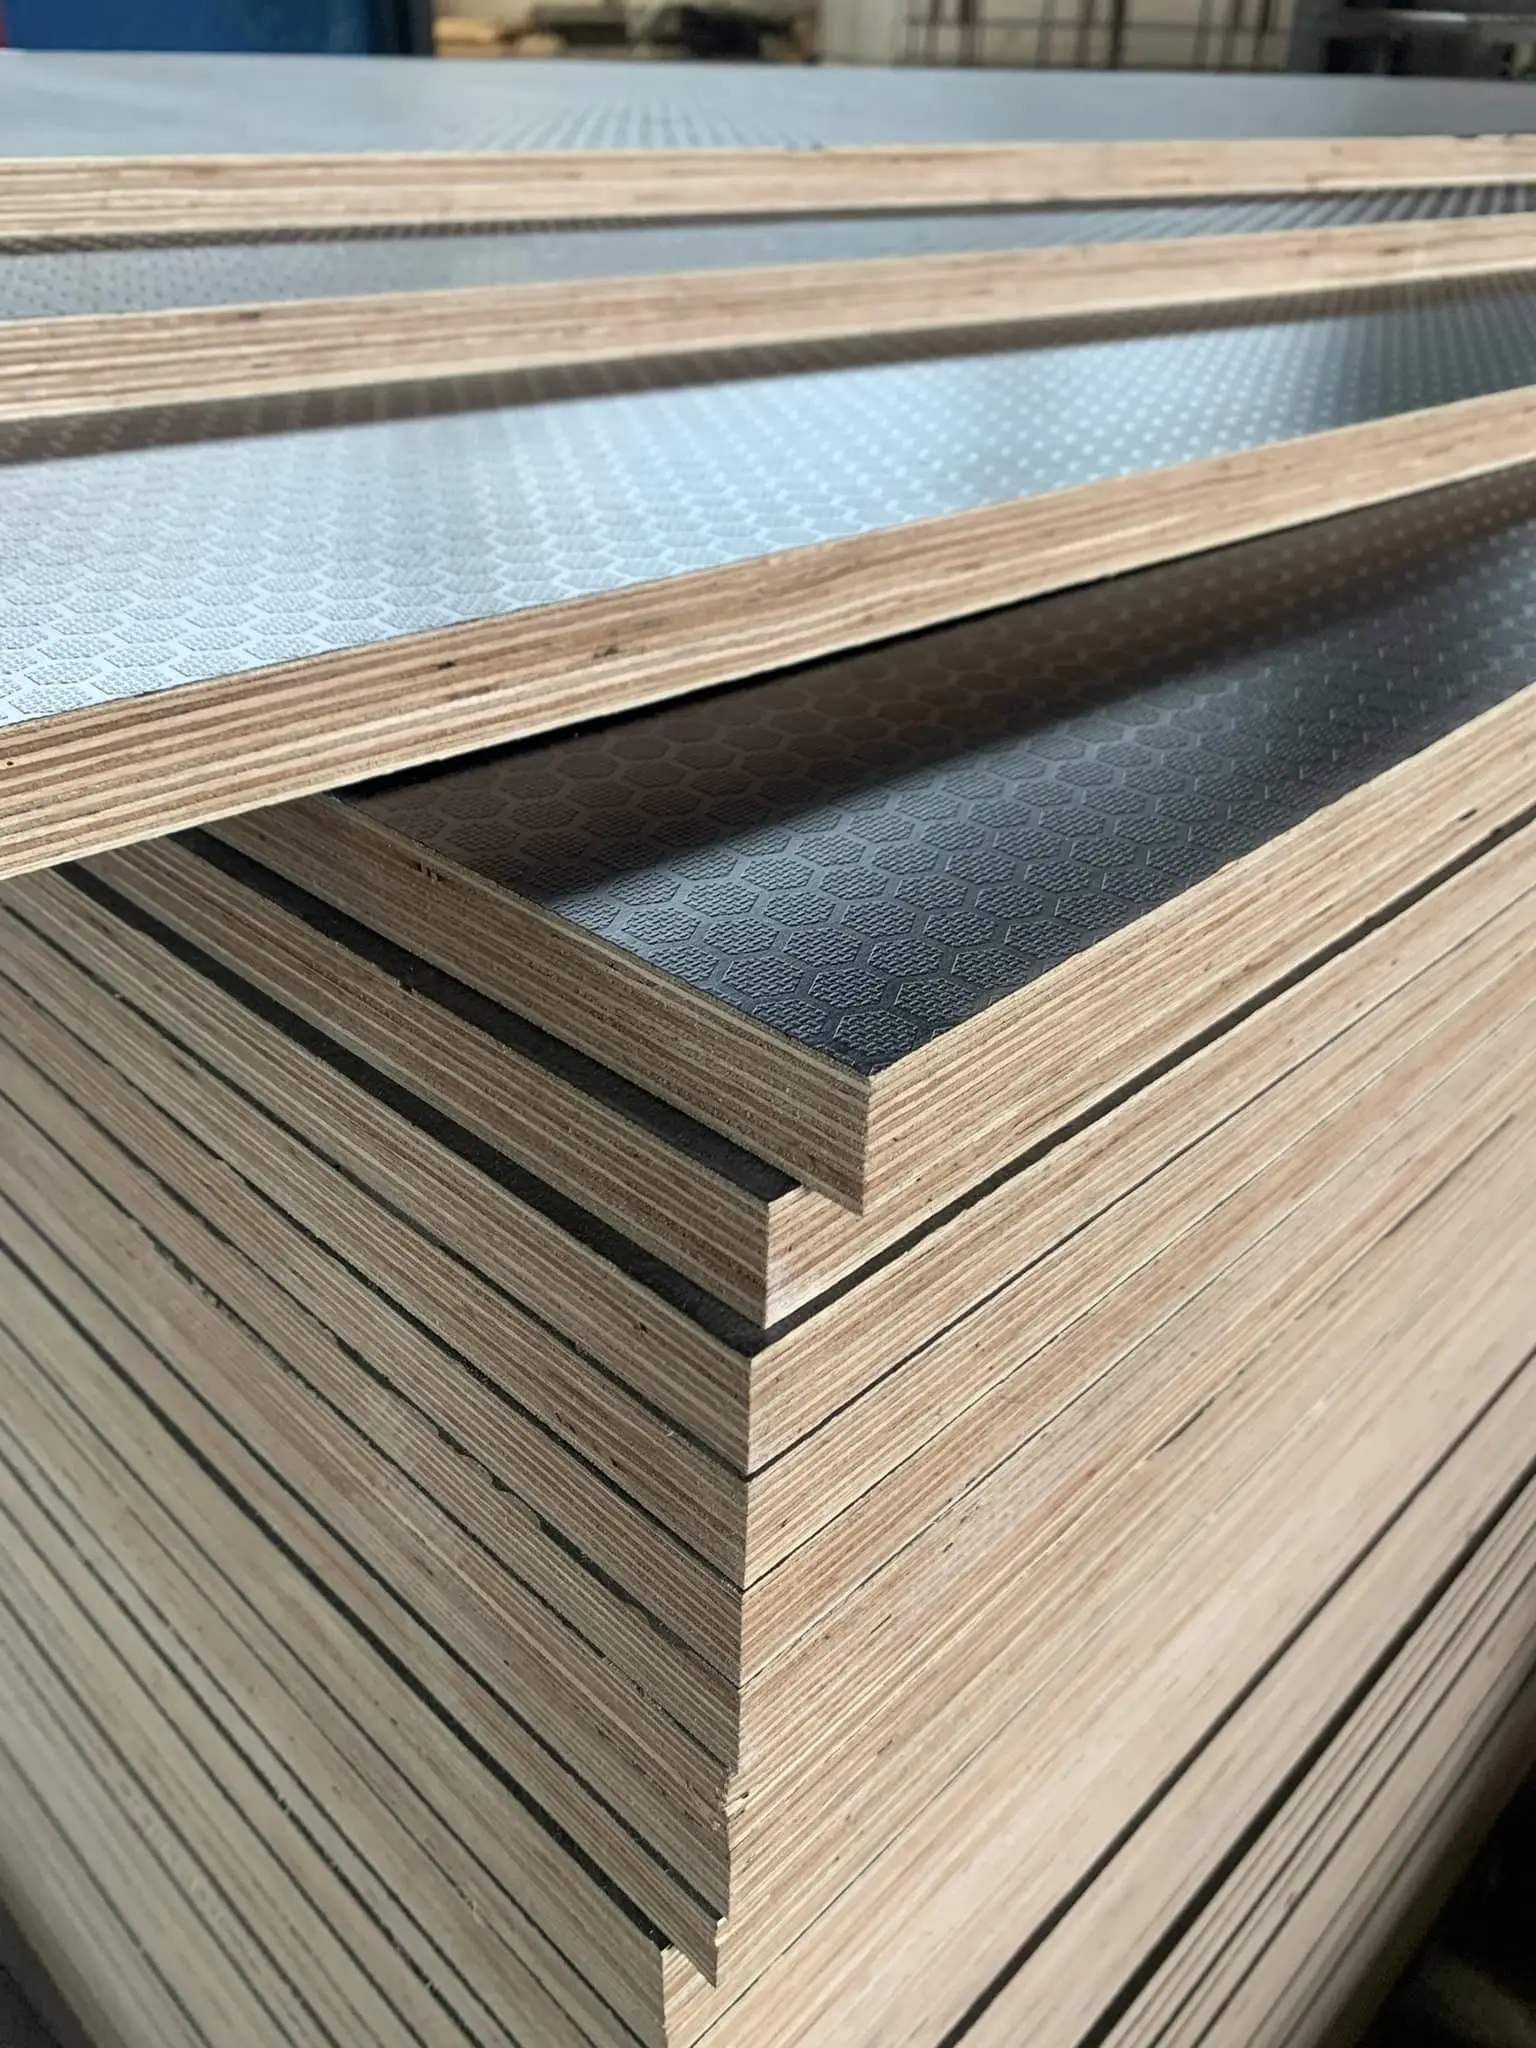 Kina Hexagon Film Faced Plywood Flooring detaljer